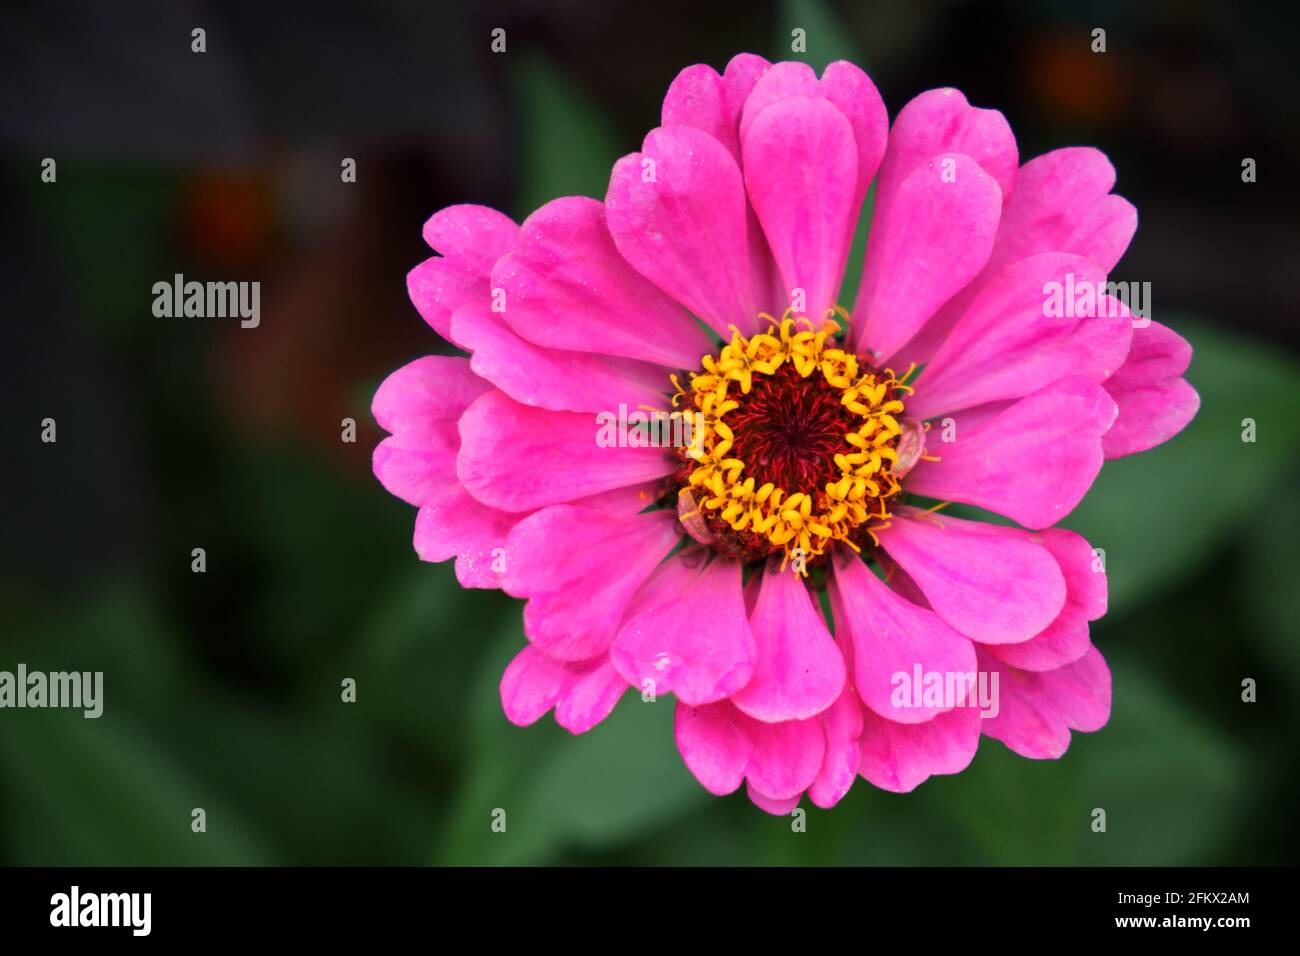 Un grande fiore di zinnia rosa su uno sfondo sfocato, primo piano. Bel fiore luminoso con petali rosa. Foto Stock